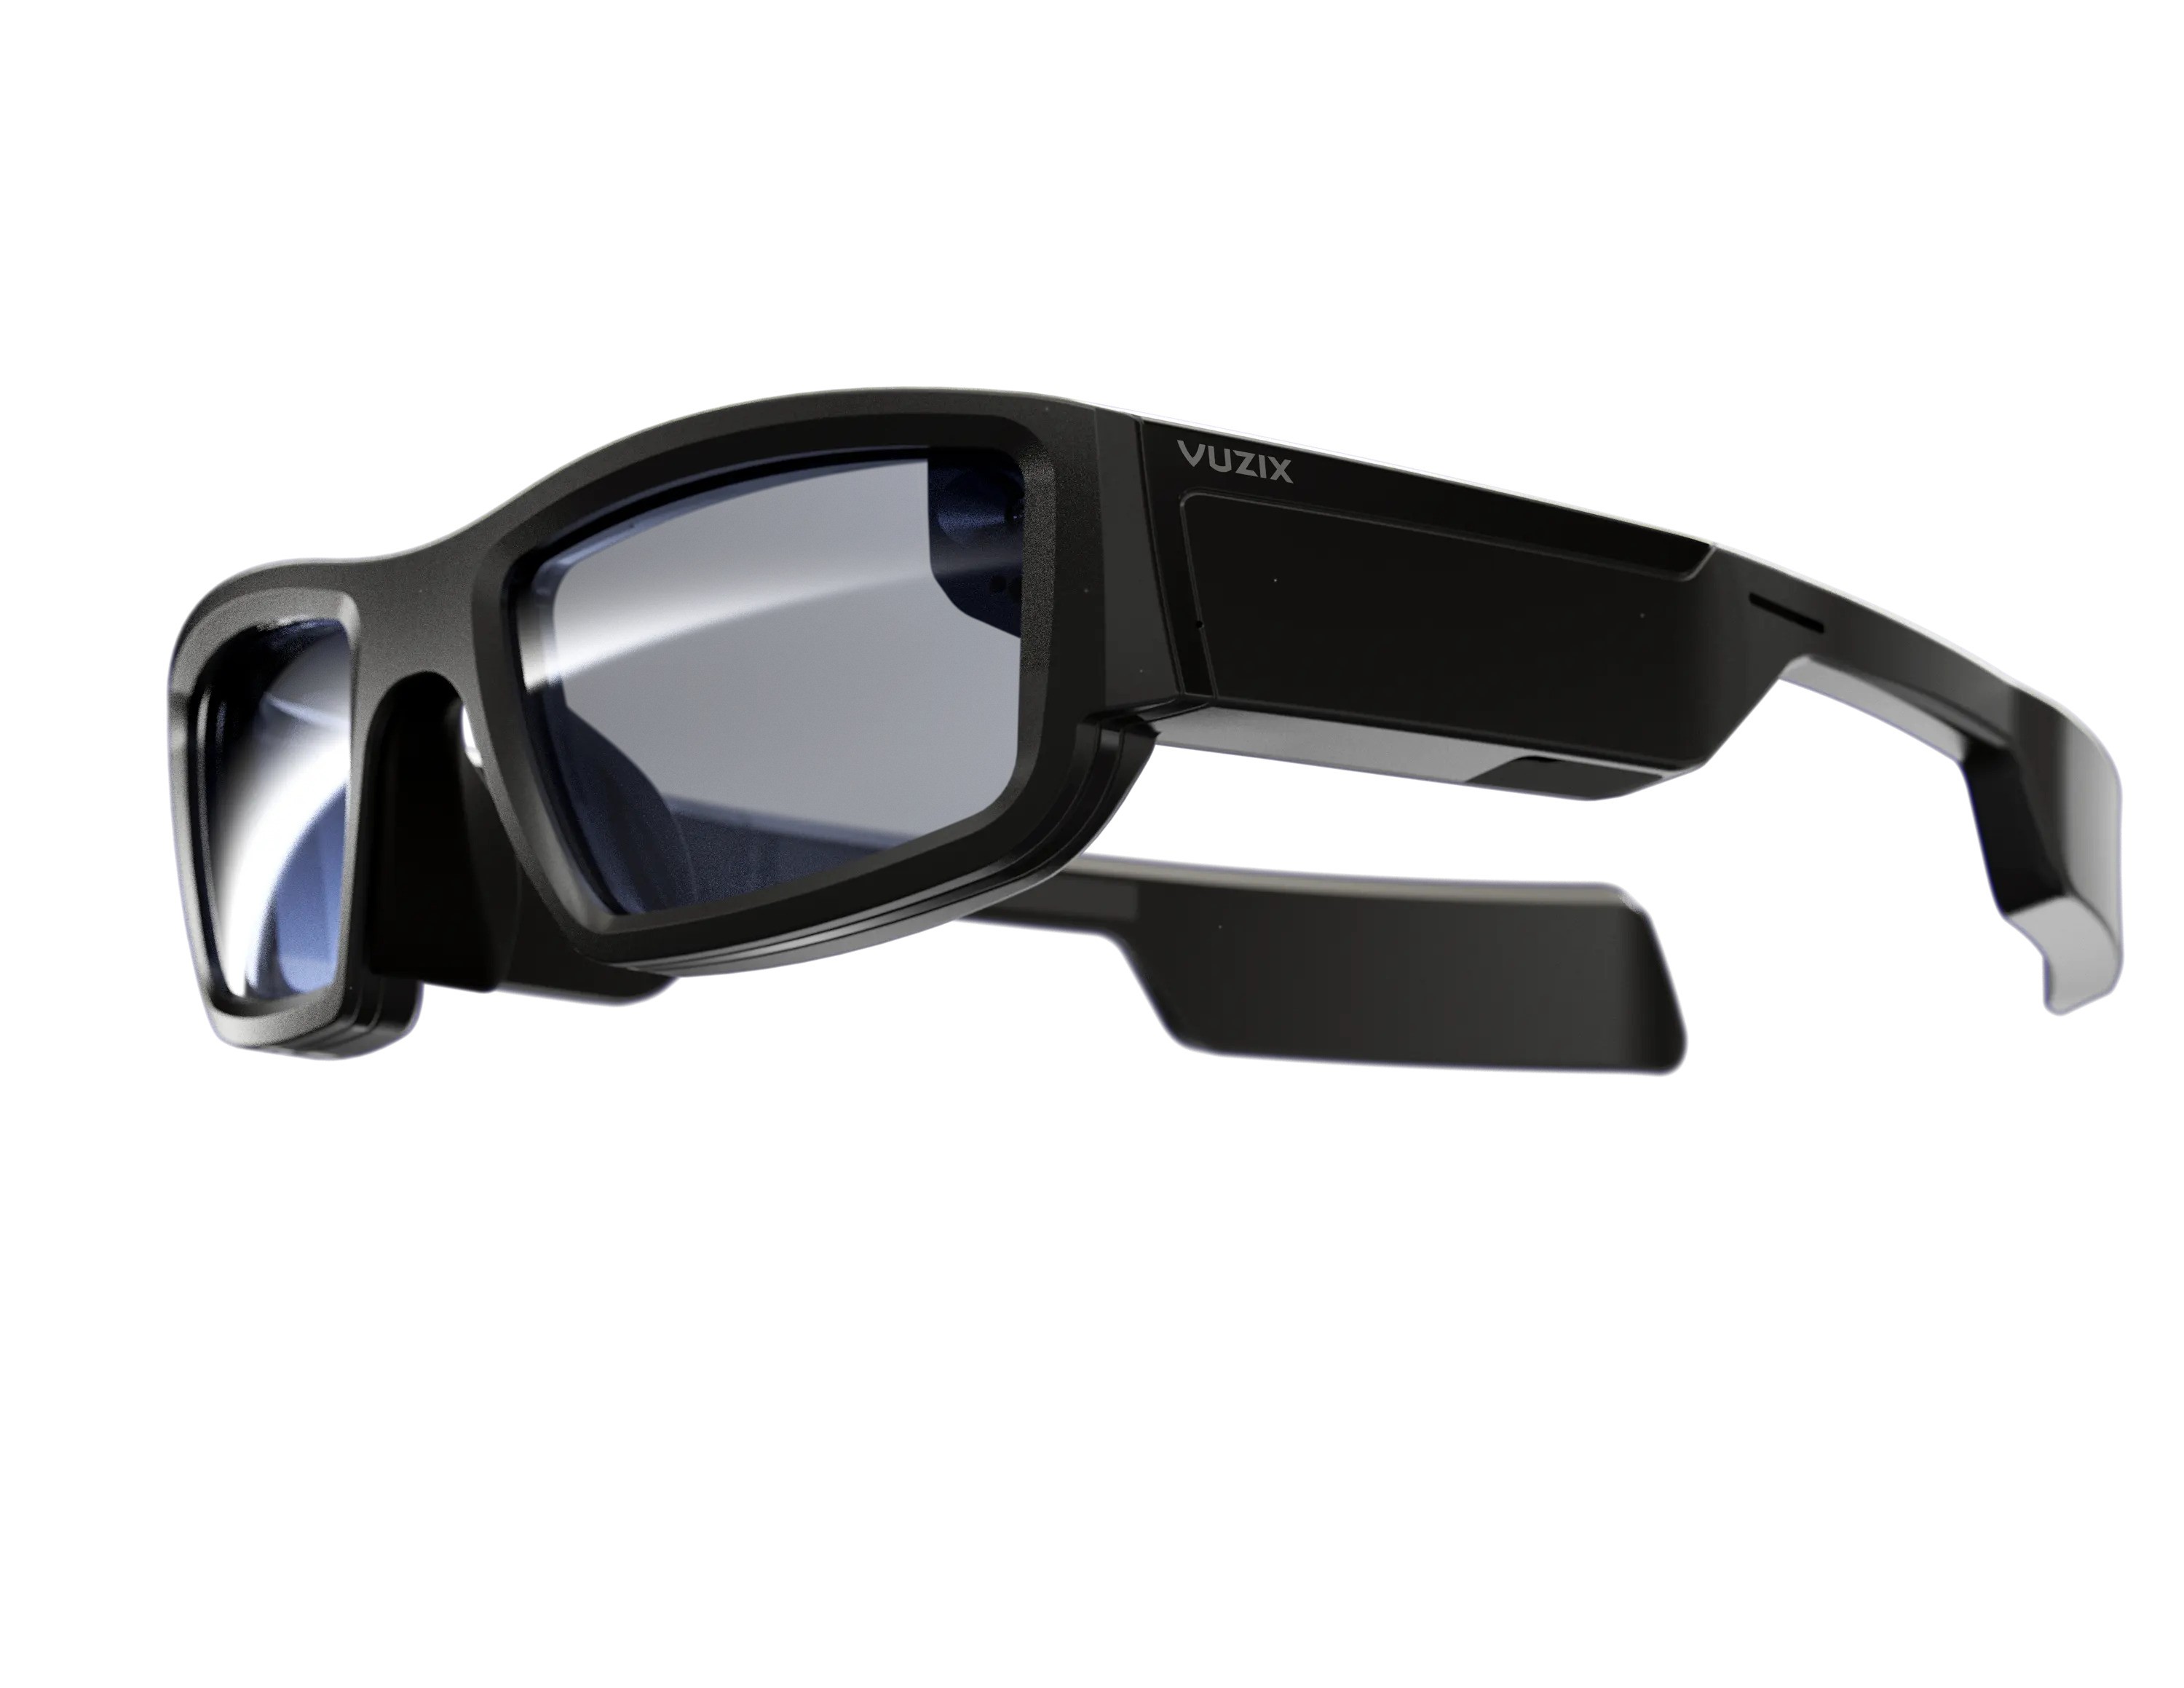 The Vuzix Blade smart glasses